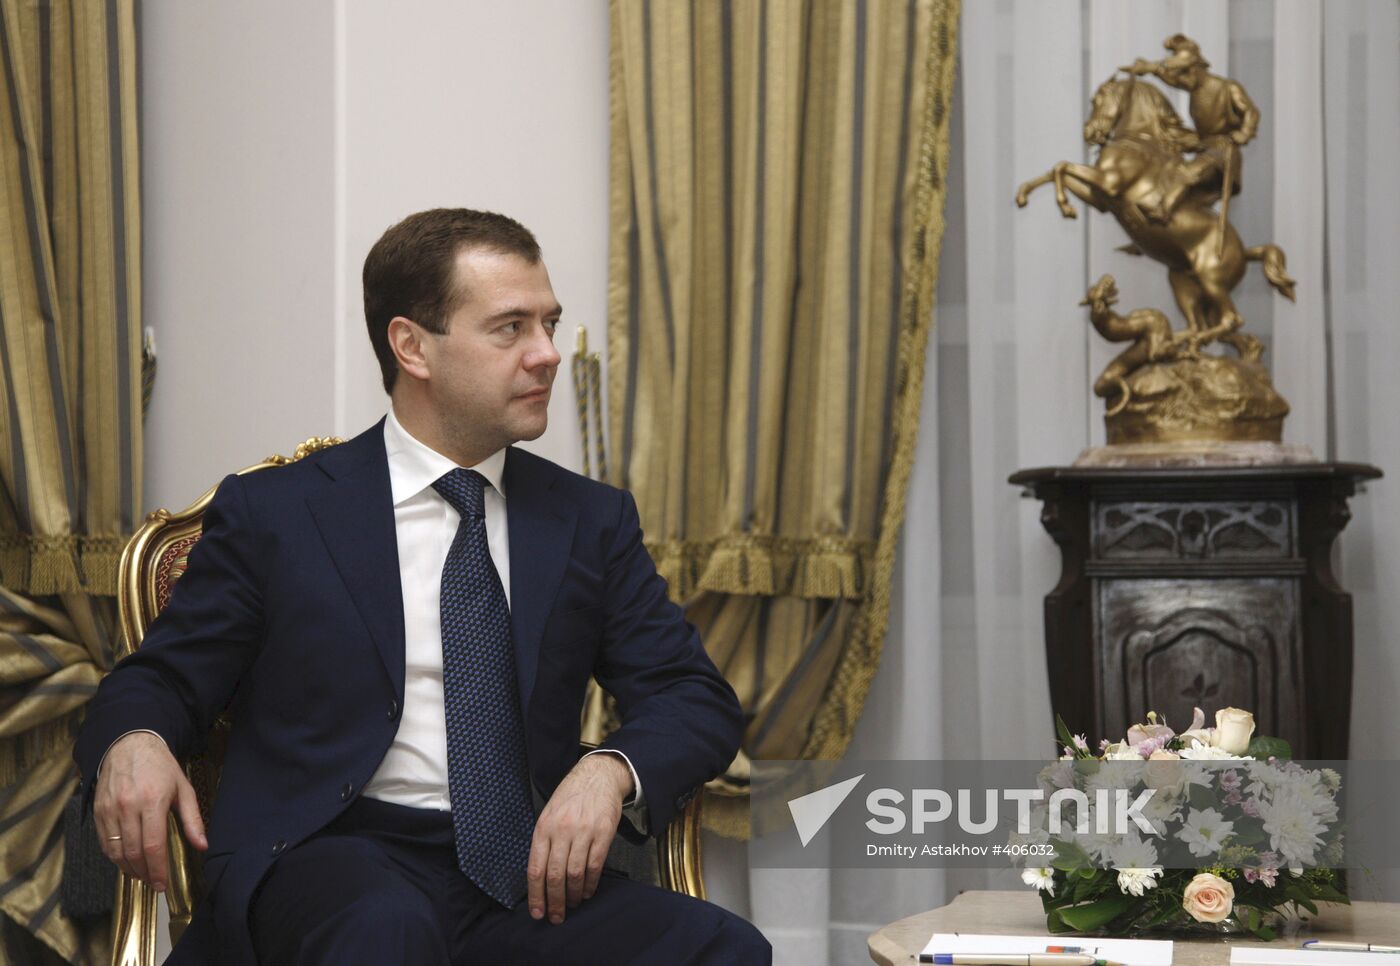 President Dmitry Medvedev's official visit to Cairo